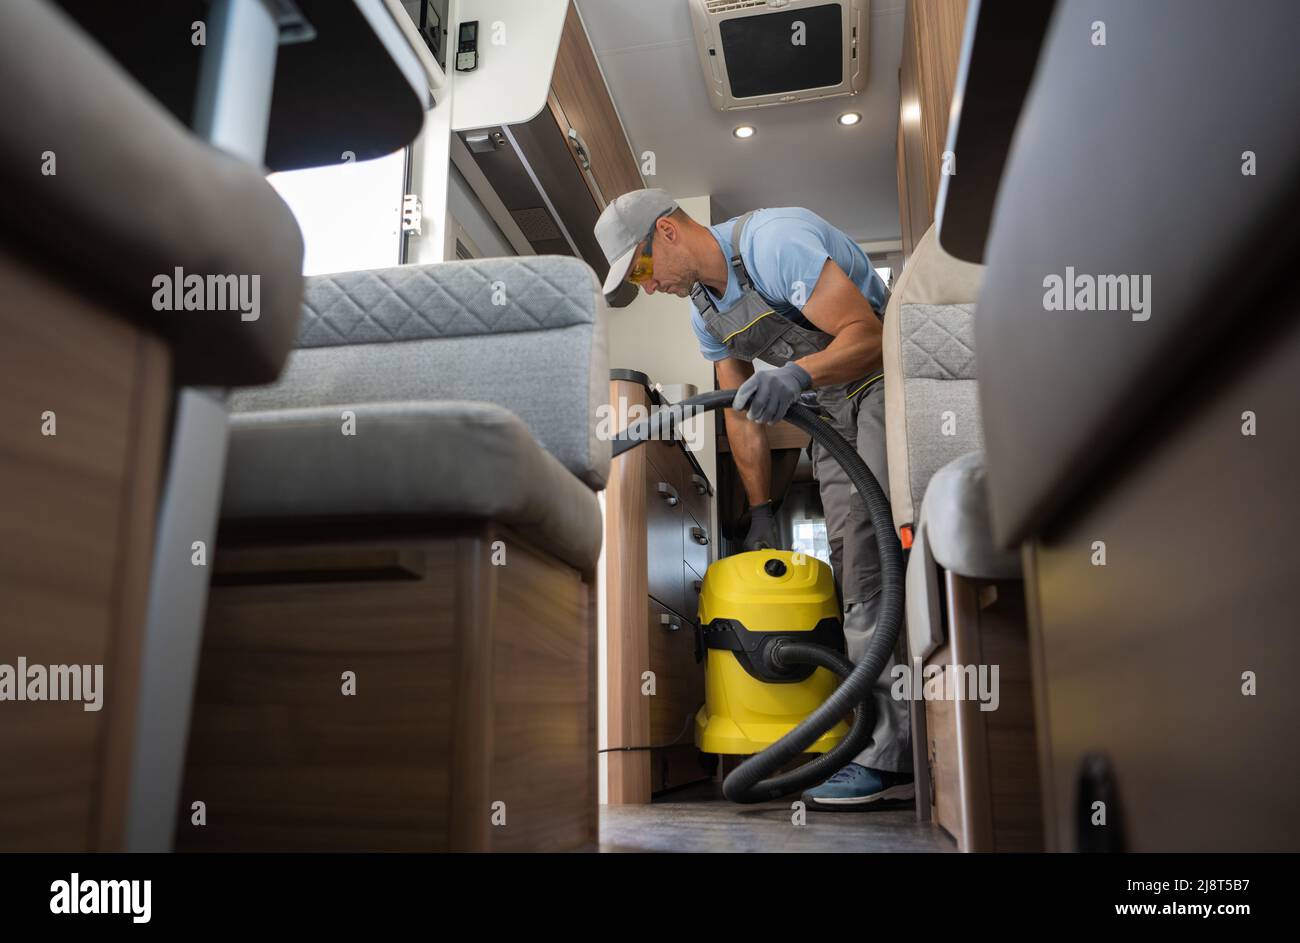 Nettoyage de l'intérieur de la fourgonnette camping-car. Travailleur caucasien dans son 40s avec aspirateur de qualité industrielle. Véhicules récréatifs thème. Banque D'Images